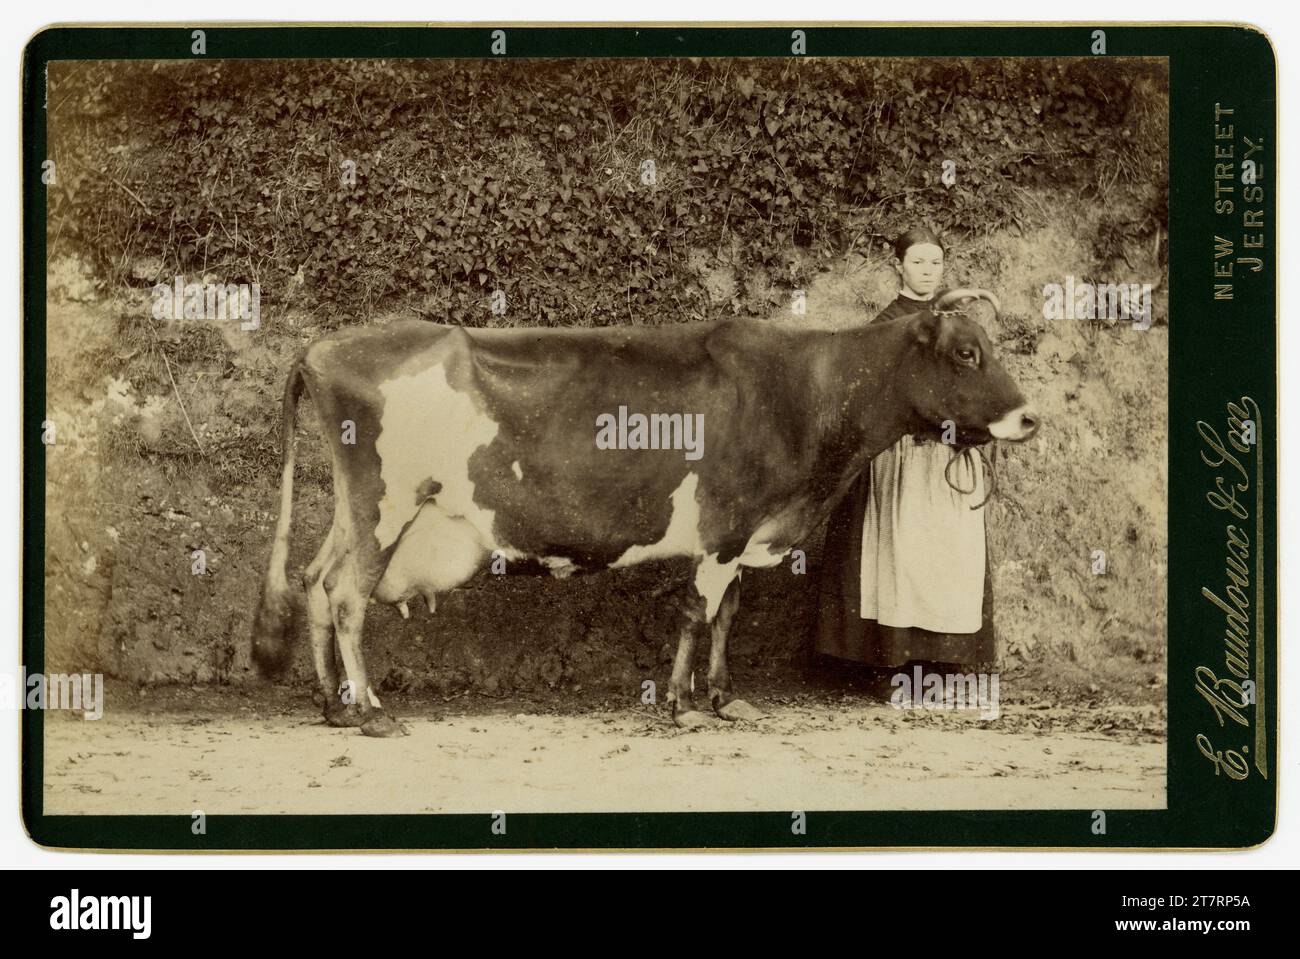 Carta originale, molto chiara, di epoca vittoriana con cameriera da latte che indossa un grembiule, accanto a una bella mucca di Alderney, forse vincitrice di un premio. Fotografato nella fattoria dal noto fotografo dell'isola dell'epoca, Ernest Baudoux & Son (il figlio si unì a lui nel 1885). St Helier, Jersey, Channel Isles. Si pensa che sia una mucca di Alderney. La mucca di Alderney è originaria delle Isole del Canale ed è un incrocio di Guernseys e Jerseys. Datata al 1885, 1886 o 1887. Foto Stock